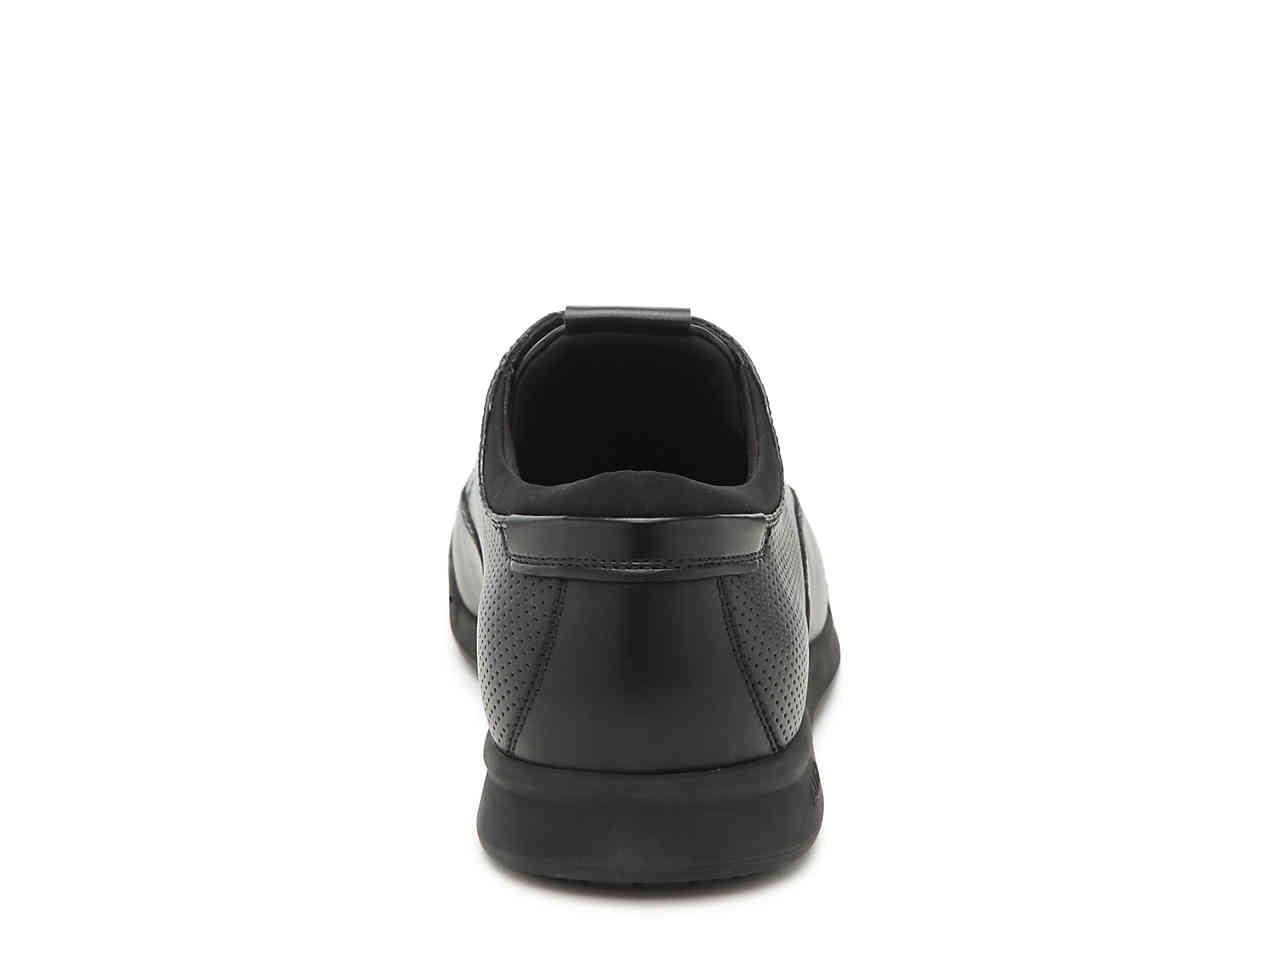 ALDO Aserrasien Work Shoe in Black for 